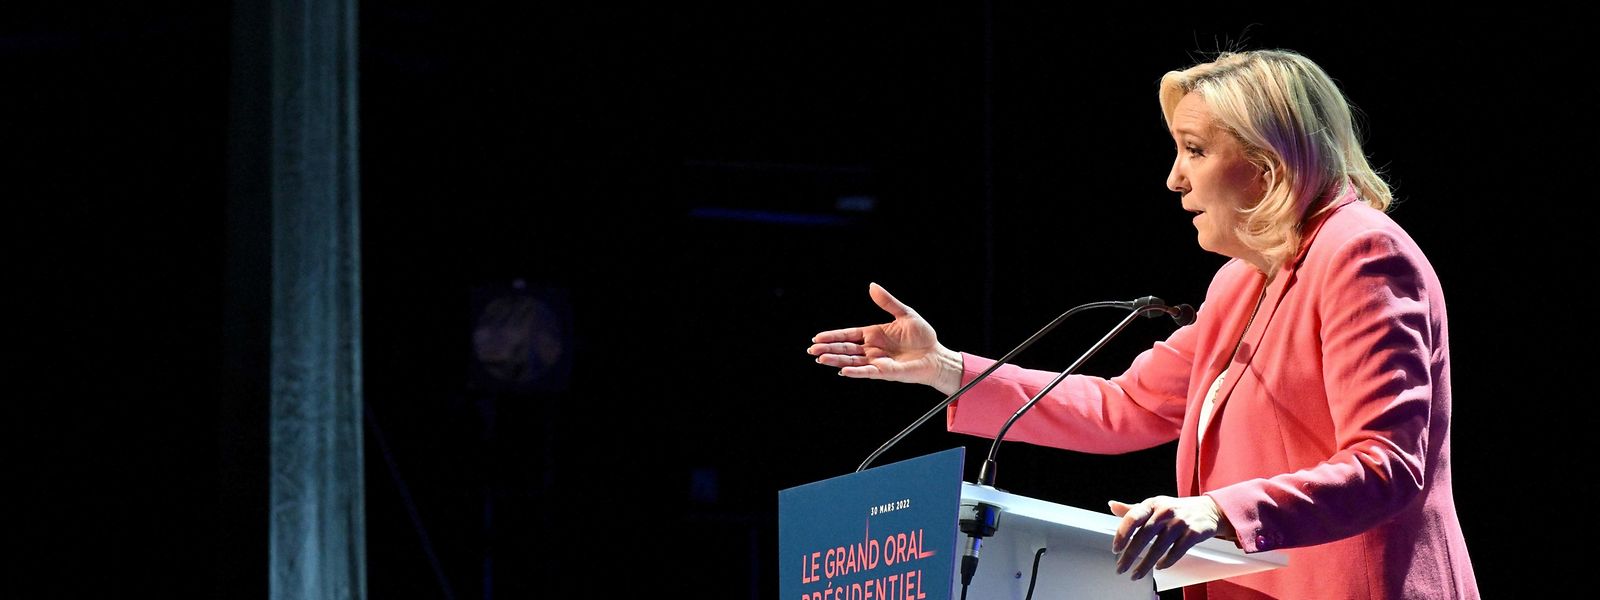 La populiste de droite française Marine Le Pen montre son côté sensible dans la campagne électorale.